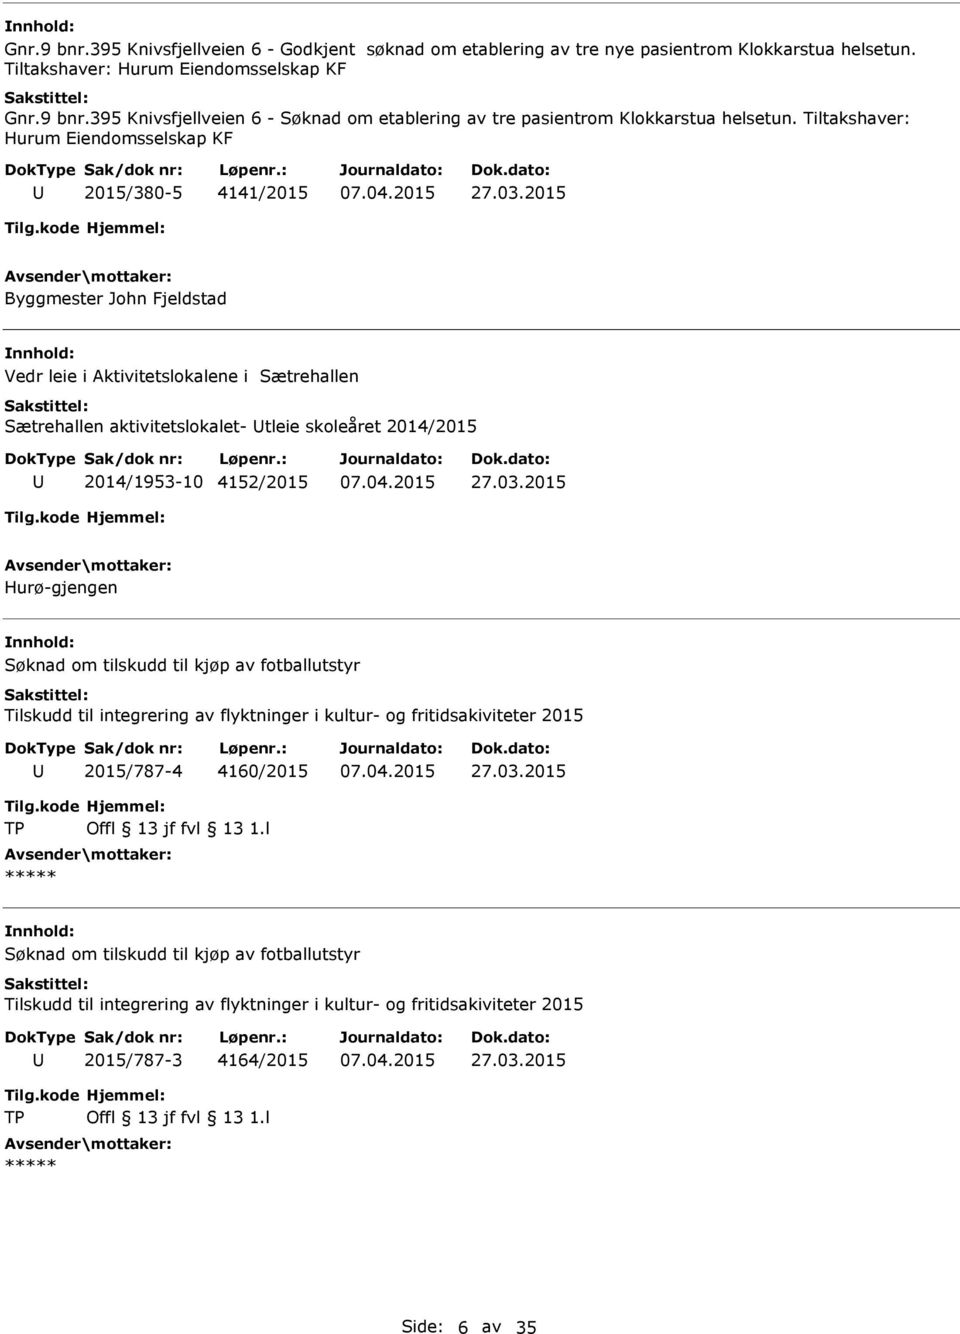 2014/1953-10 4152/2015 Hurø-gjengen Søknad om tilskudd til kjøp av fotballutstyr Tilskudd til integrering av flyktninger i kultur- og fritidsakiviteter 2015 2015/787-4 4160/2015 ***** Søknad om